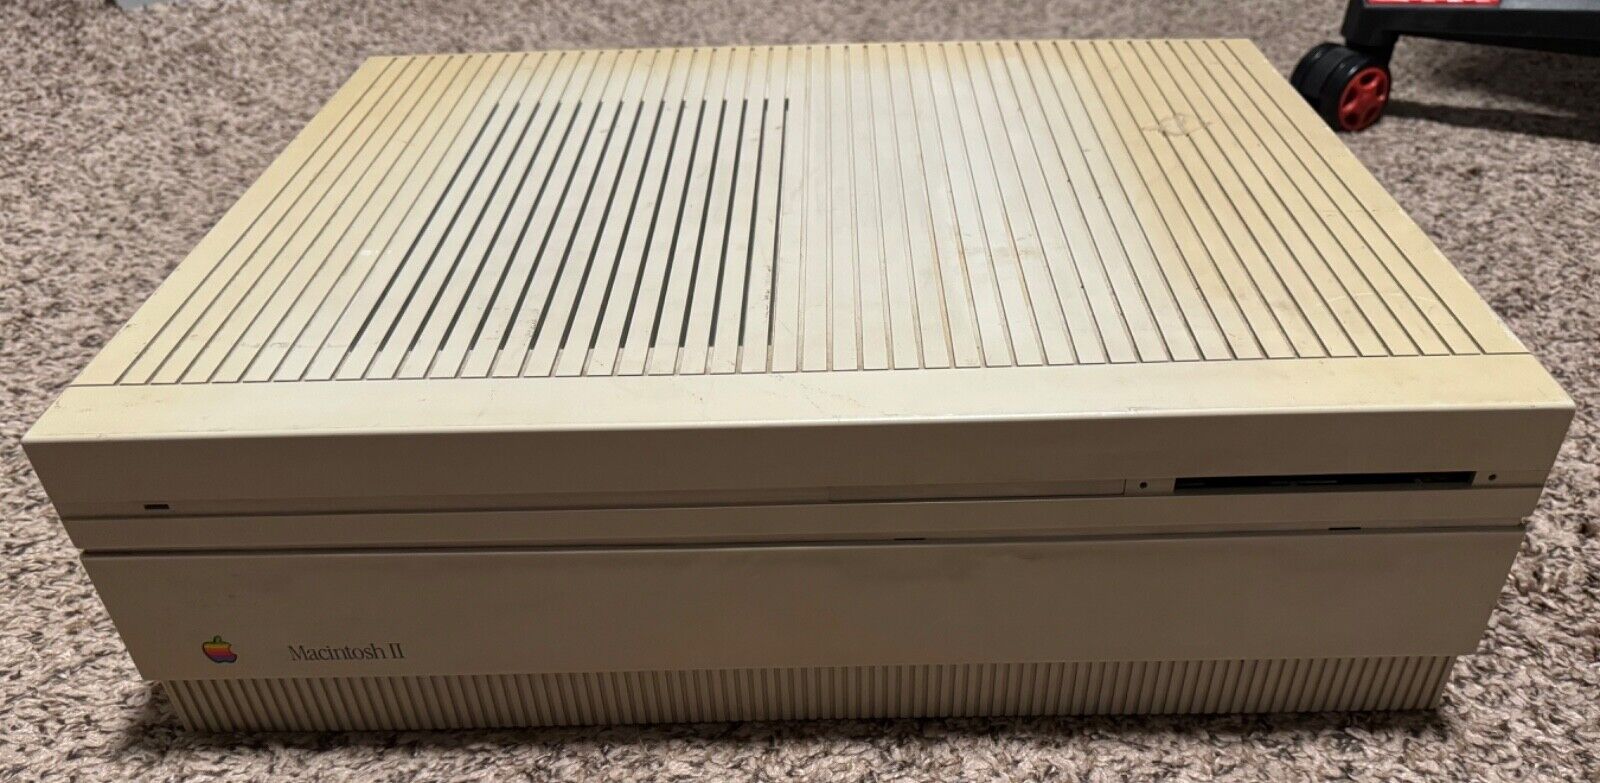 Vintage Apple Macintosh II System